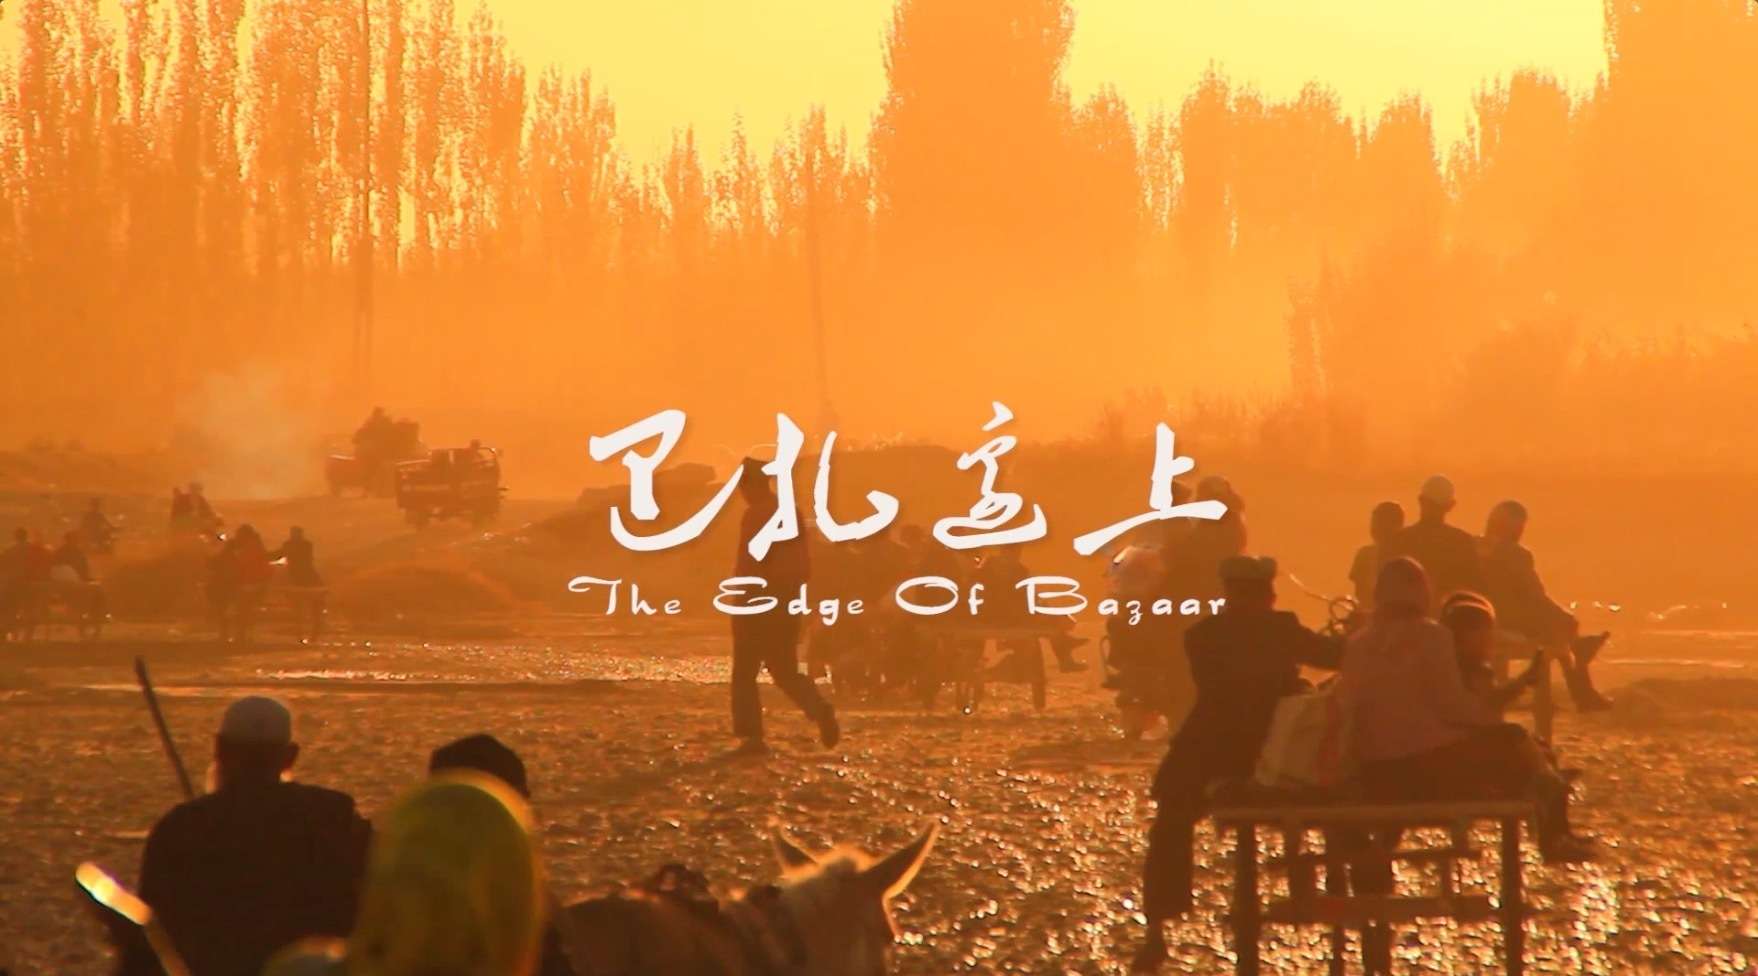 维吾尔族民族手工艺纪录片《巴扎边上》